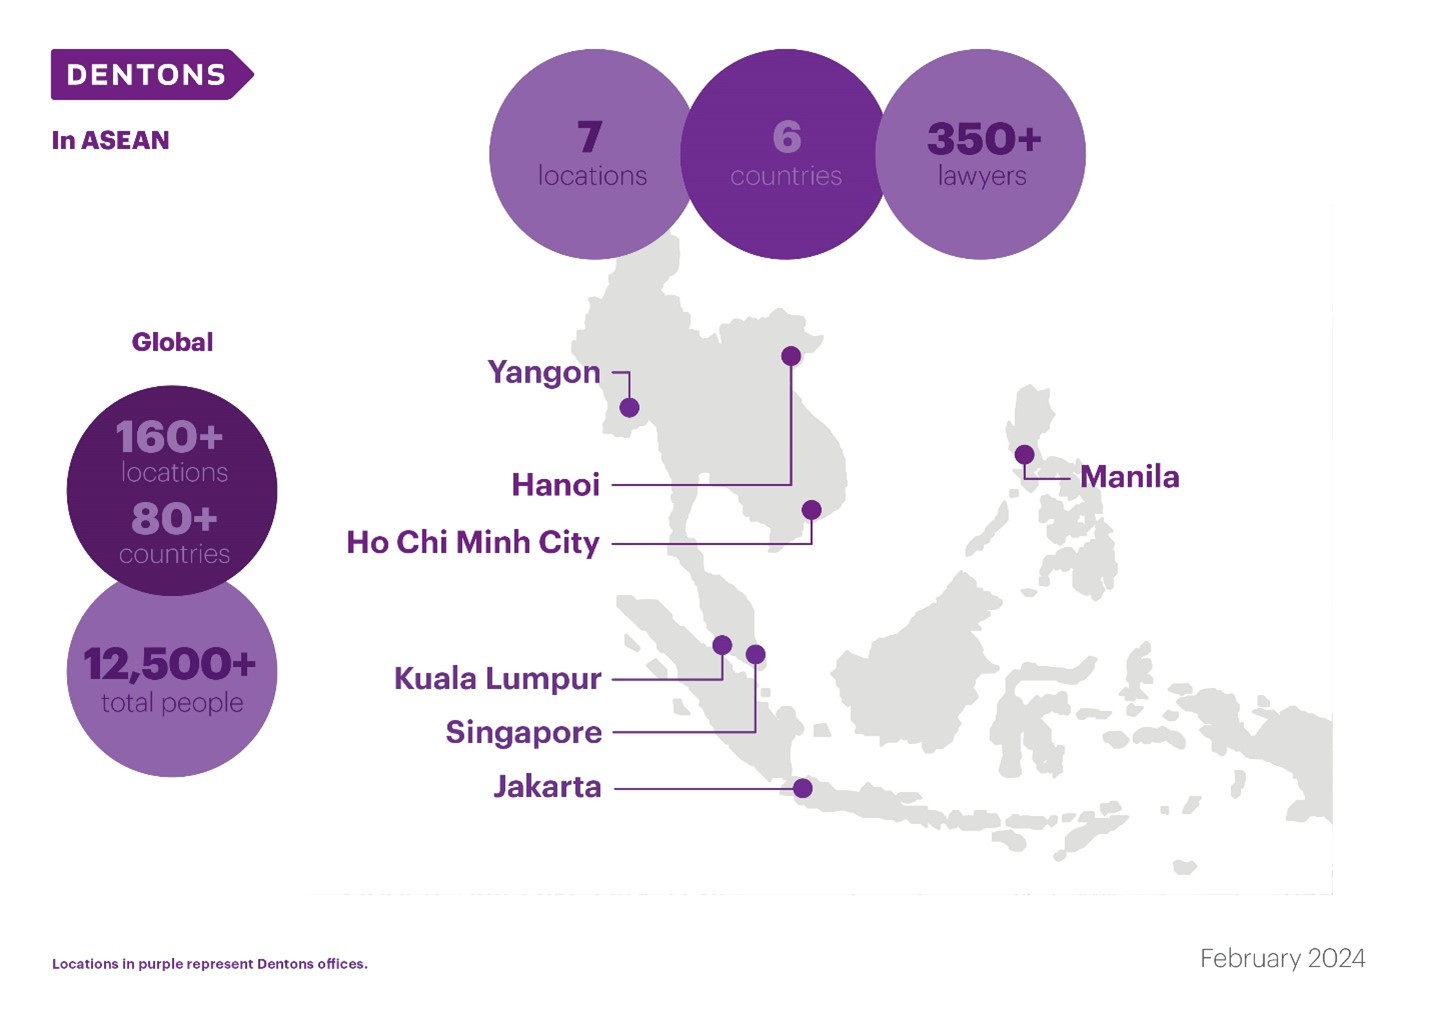 Dentons presence in ASEAN region as of February 2024. Manila, Kuala Lumpur, Singapore, Jakarta, Ho Chi Minh city, Hanoi, Yangon